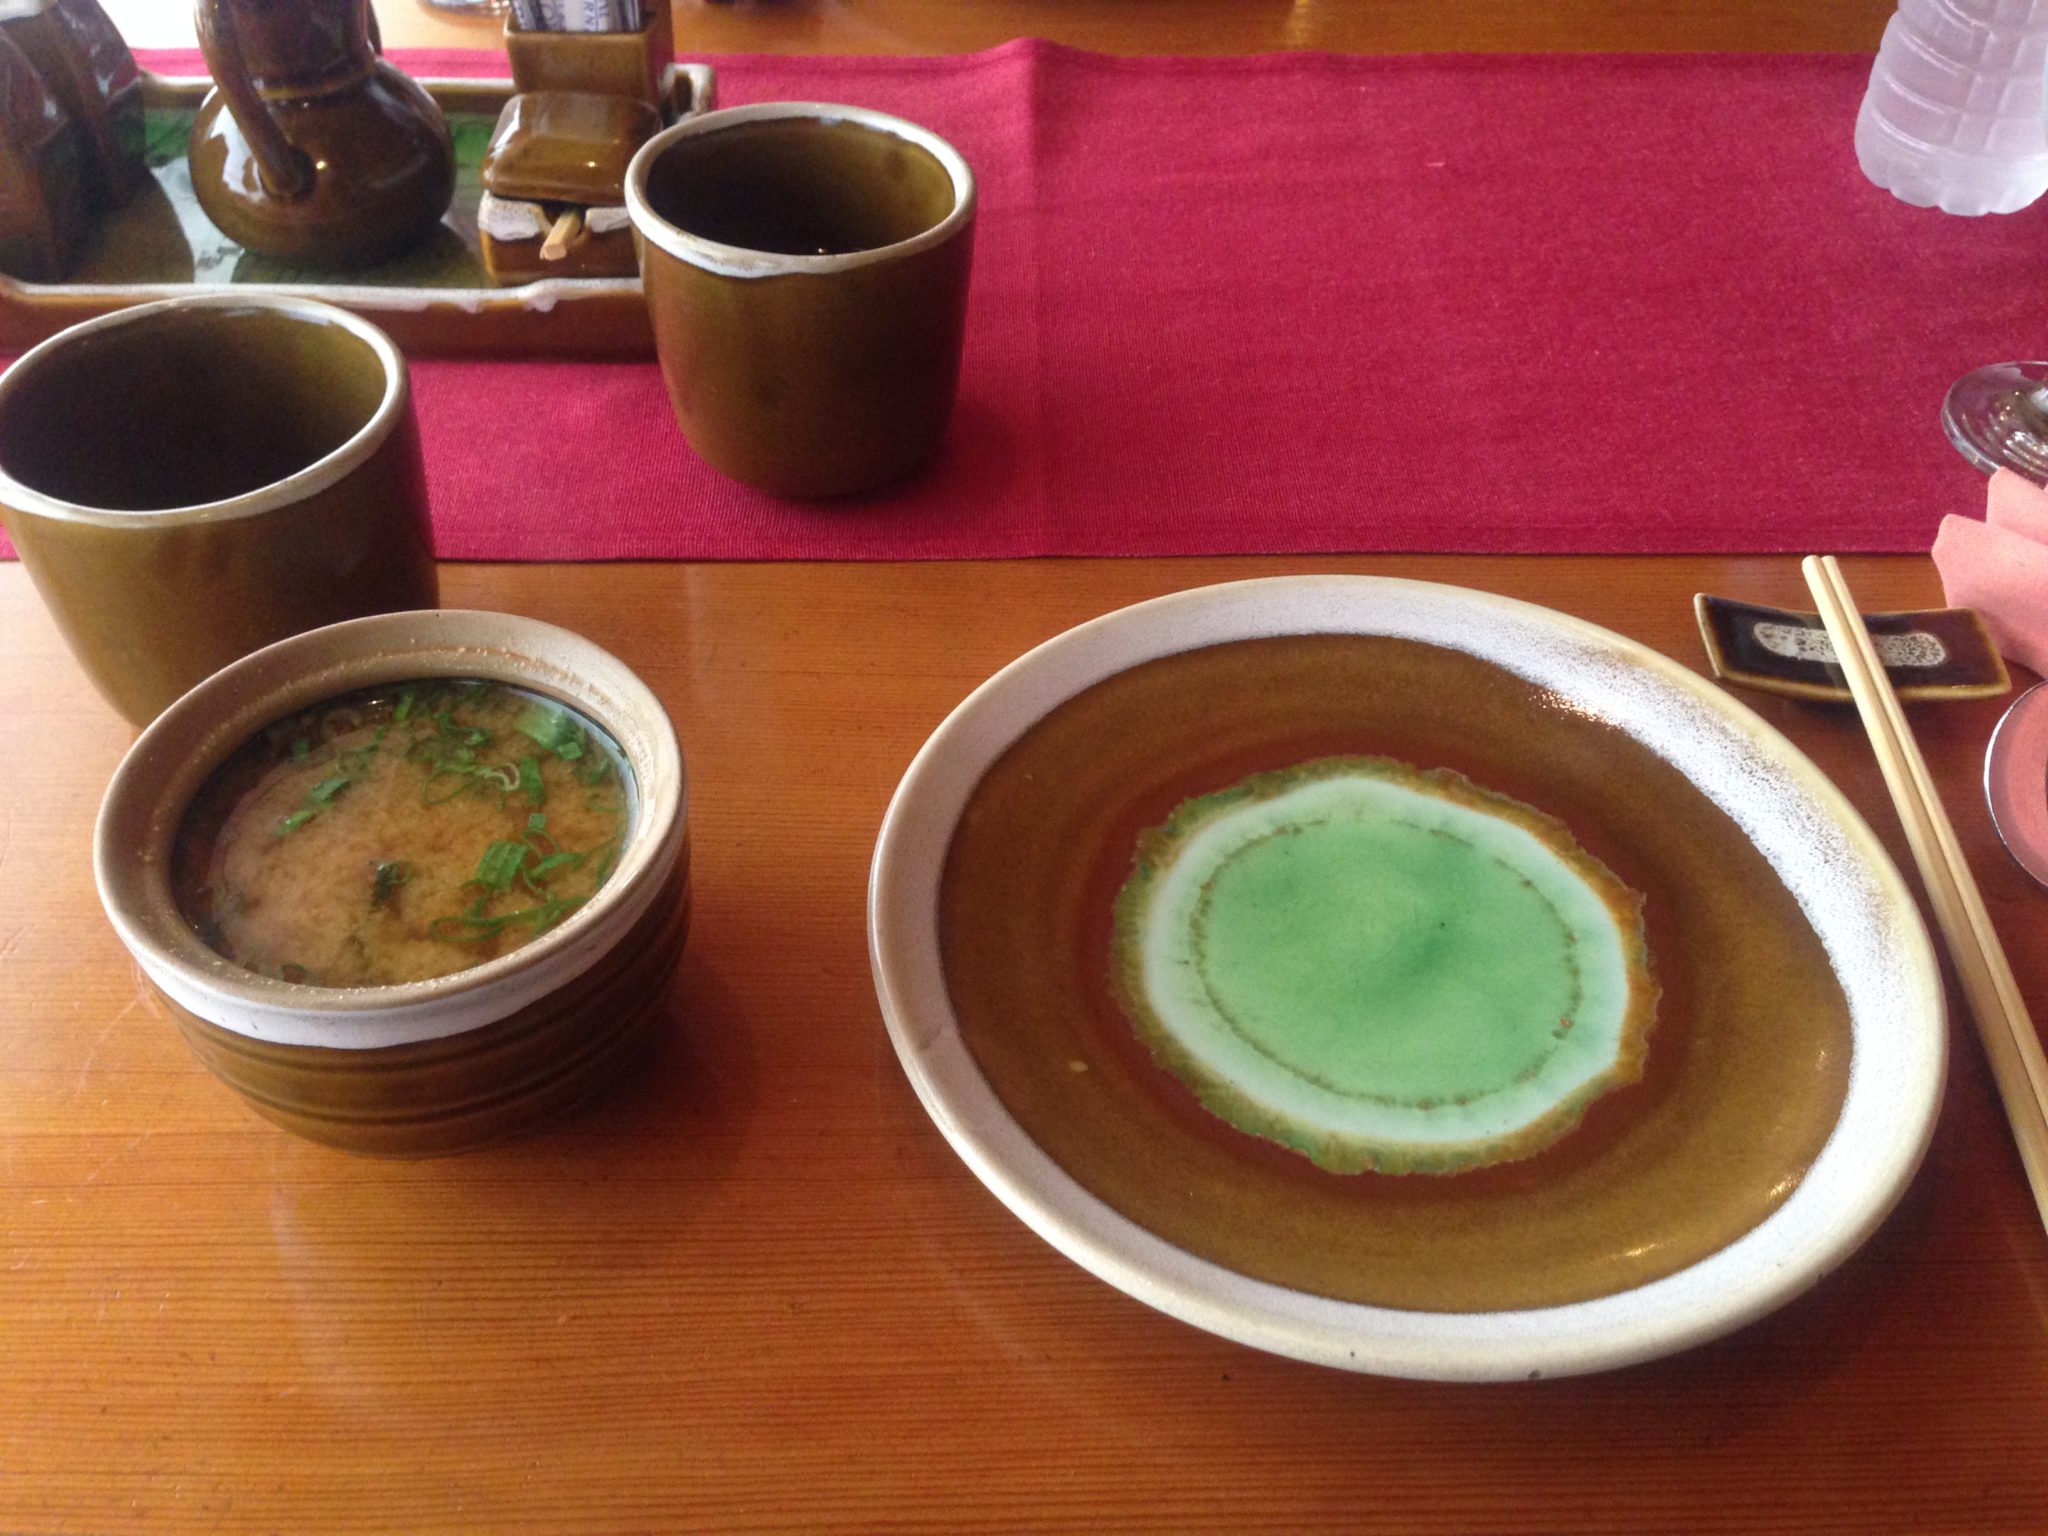 Miso soup at setting at Fujiyama